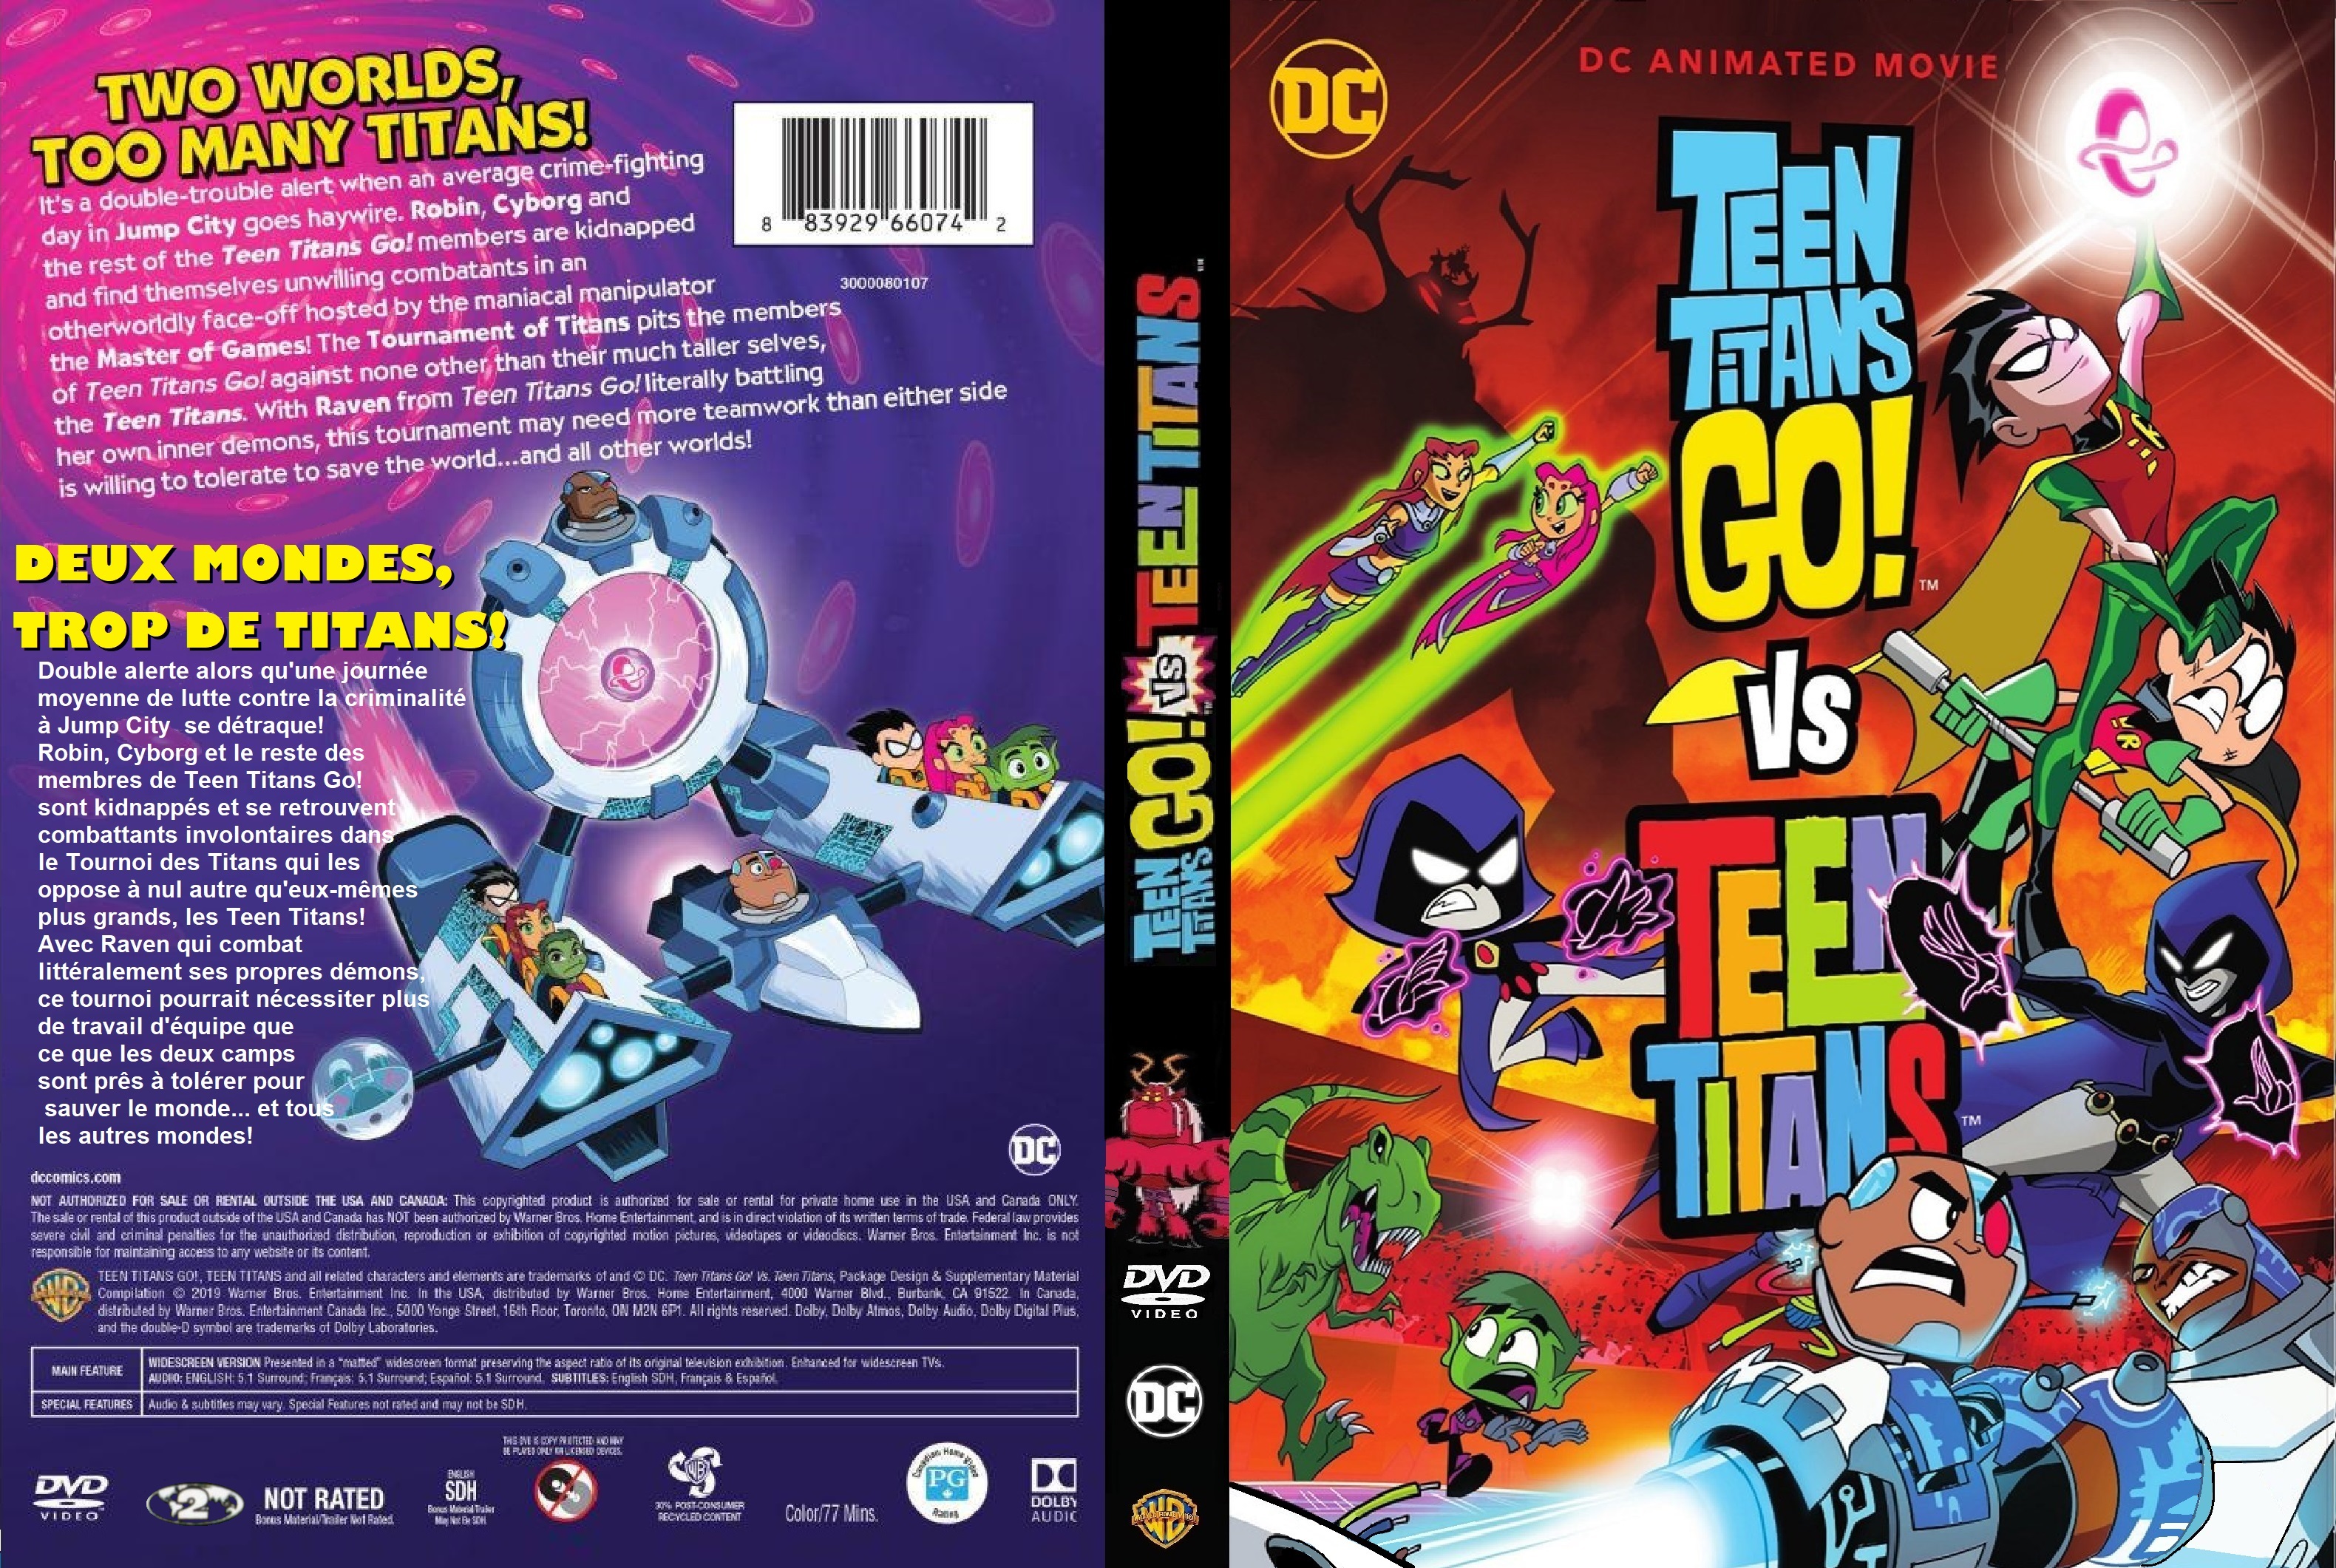 Jaquette DVD Teen Titans Go! VS Teen Titans custom